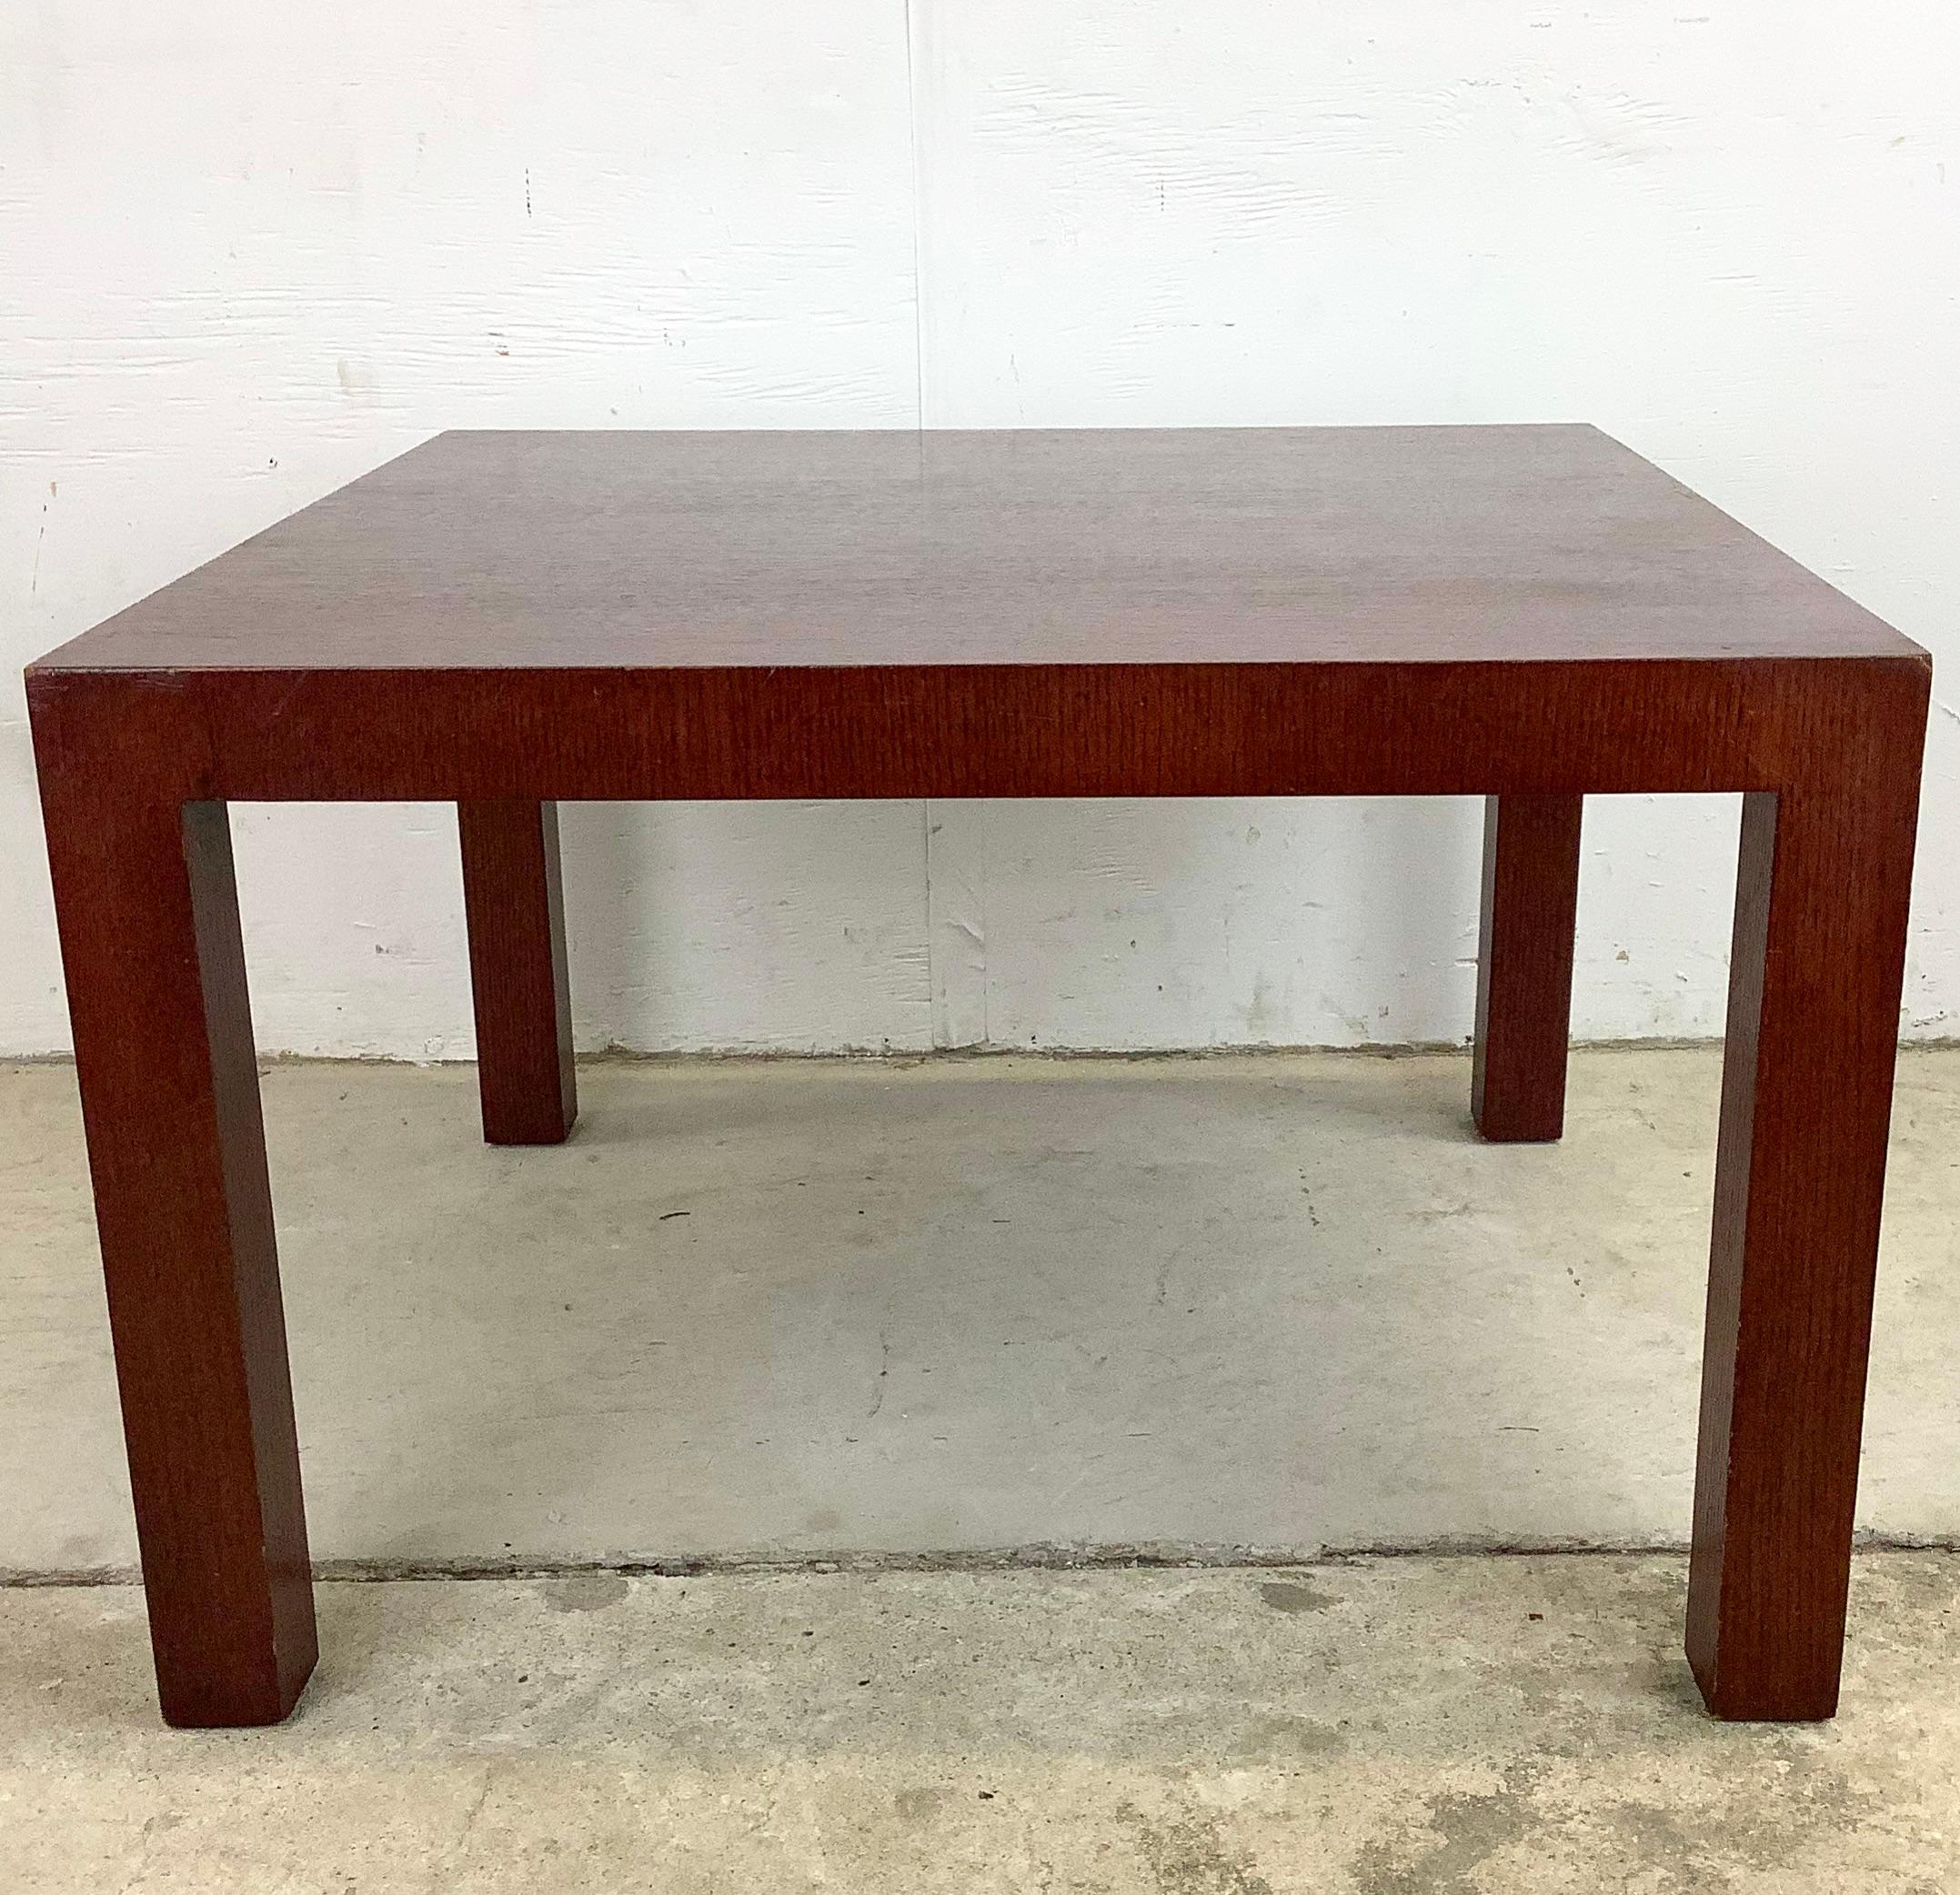 Le design simple et moderne de cette table d'appoint Knoll est mis en valeur par ses lignes épurées et son choix de bois de qualité. La construction lourde et le style MCM en font l'ajout parfait à tout intérieur ayant besoin d'une table d'appoint